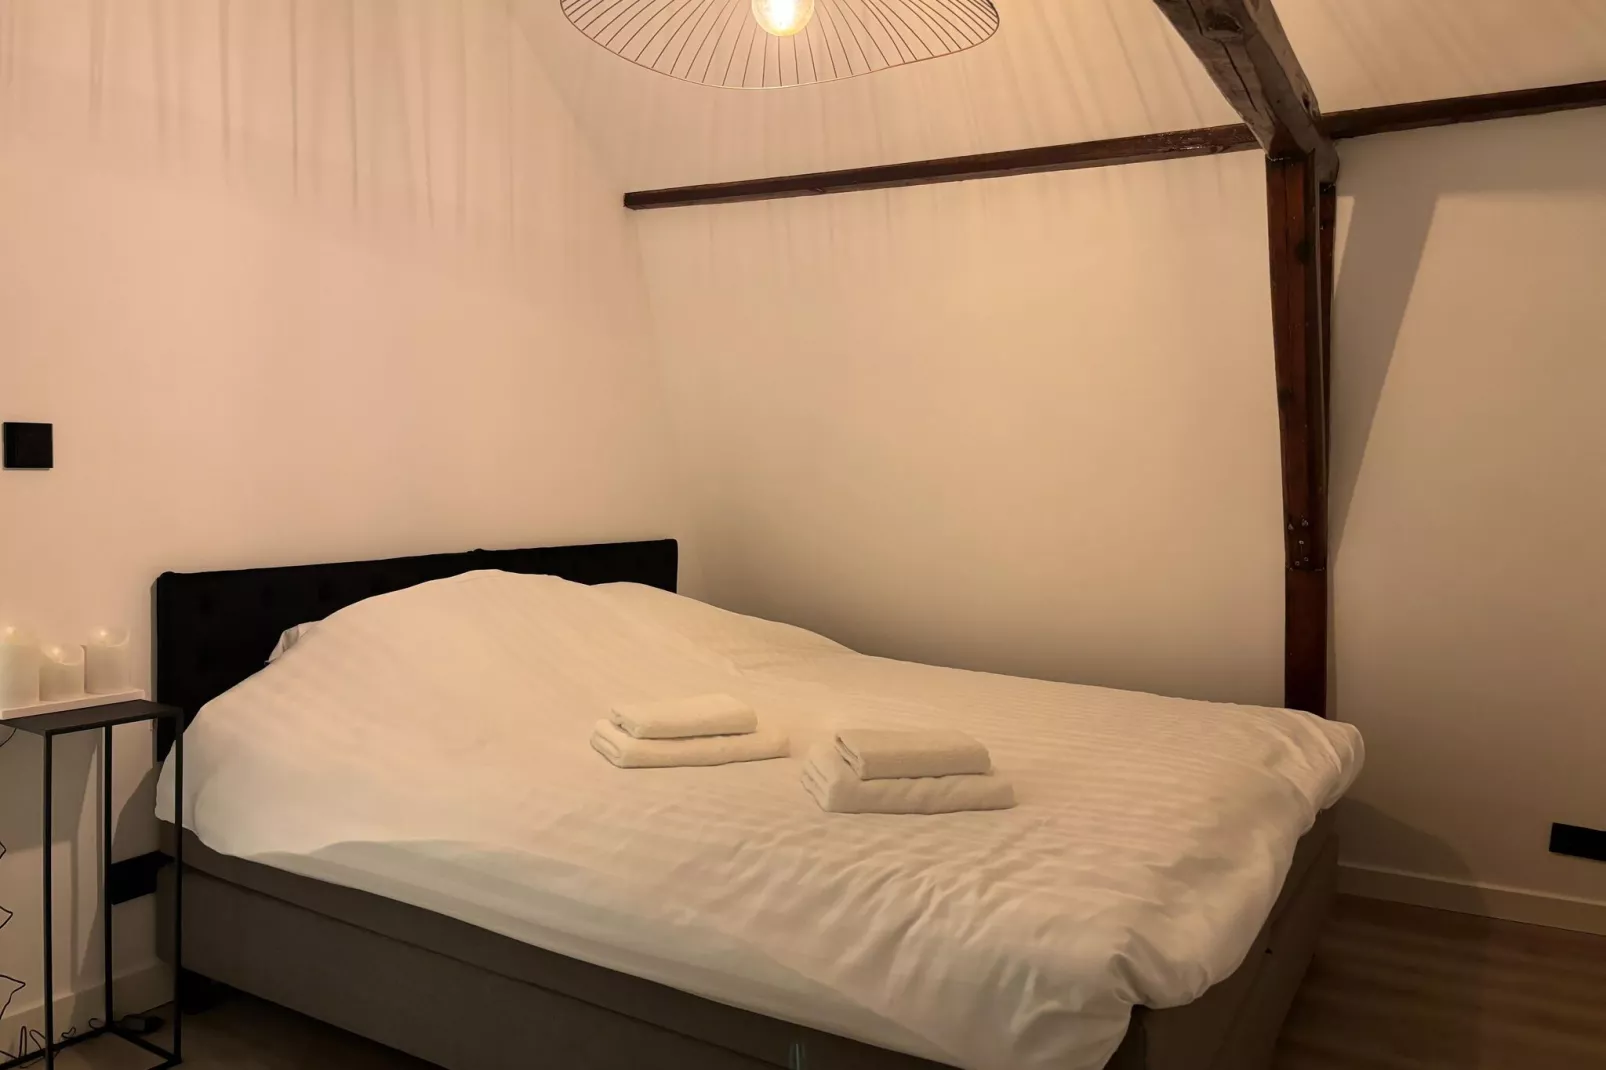 Vakantiehuisje centrum Abcoude aan de Angstel-Slaapkamer